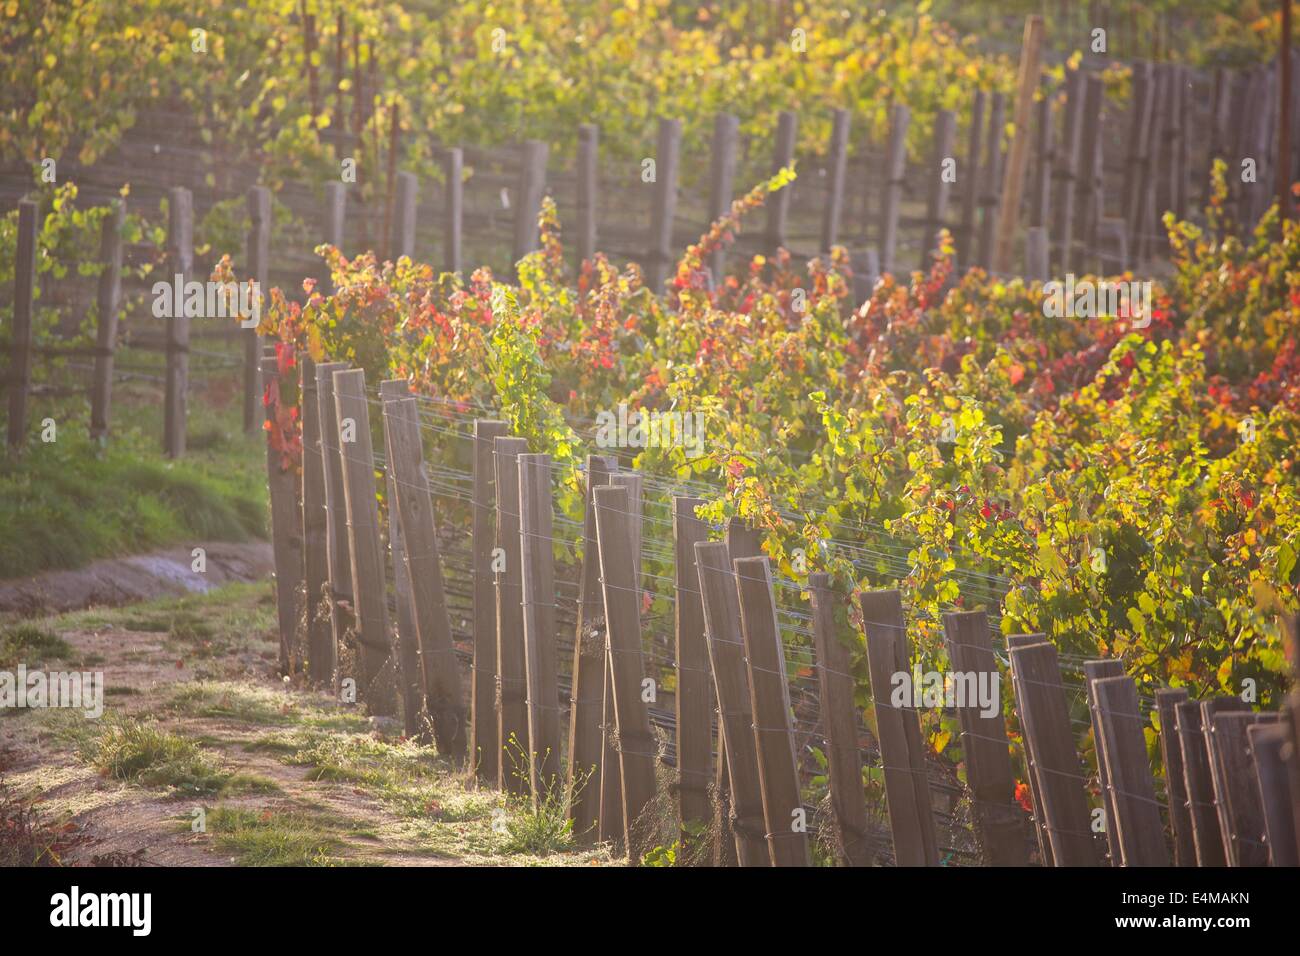 Autunno nel paese del vino di Napa Valley e Sonoma County, California Foto Stock